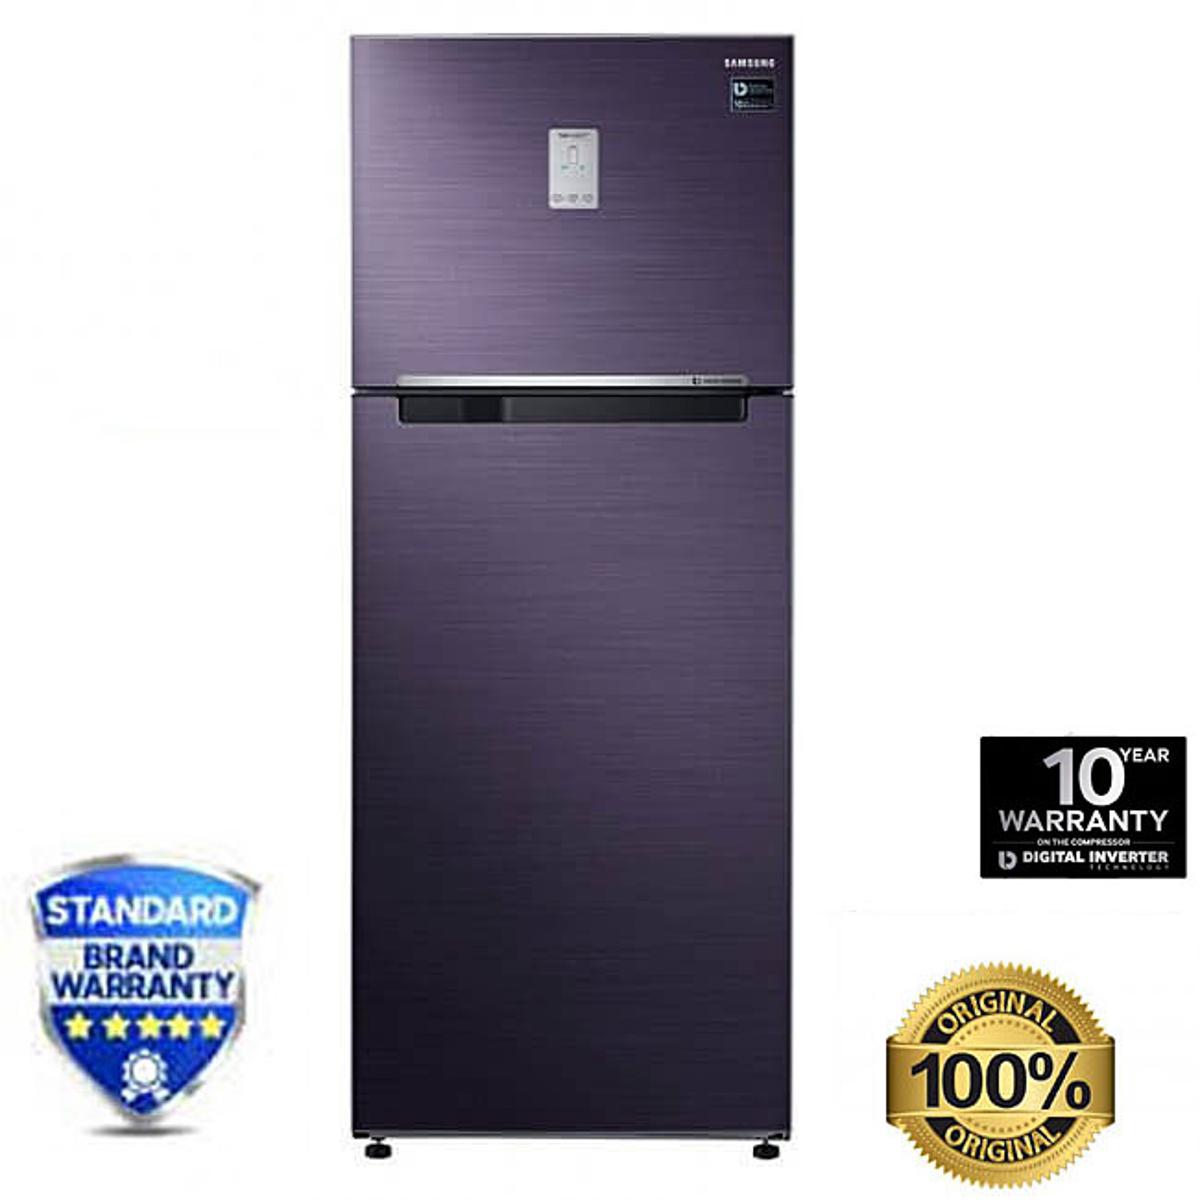 Samsung Top Mount Refrigerator Model- RT34K5532UT/D3 Capacity- 321L